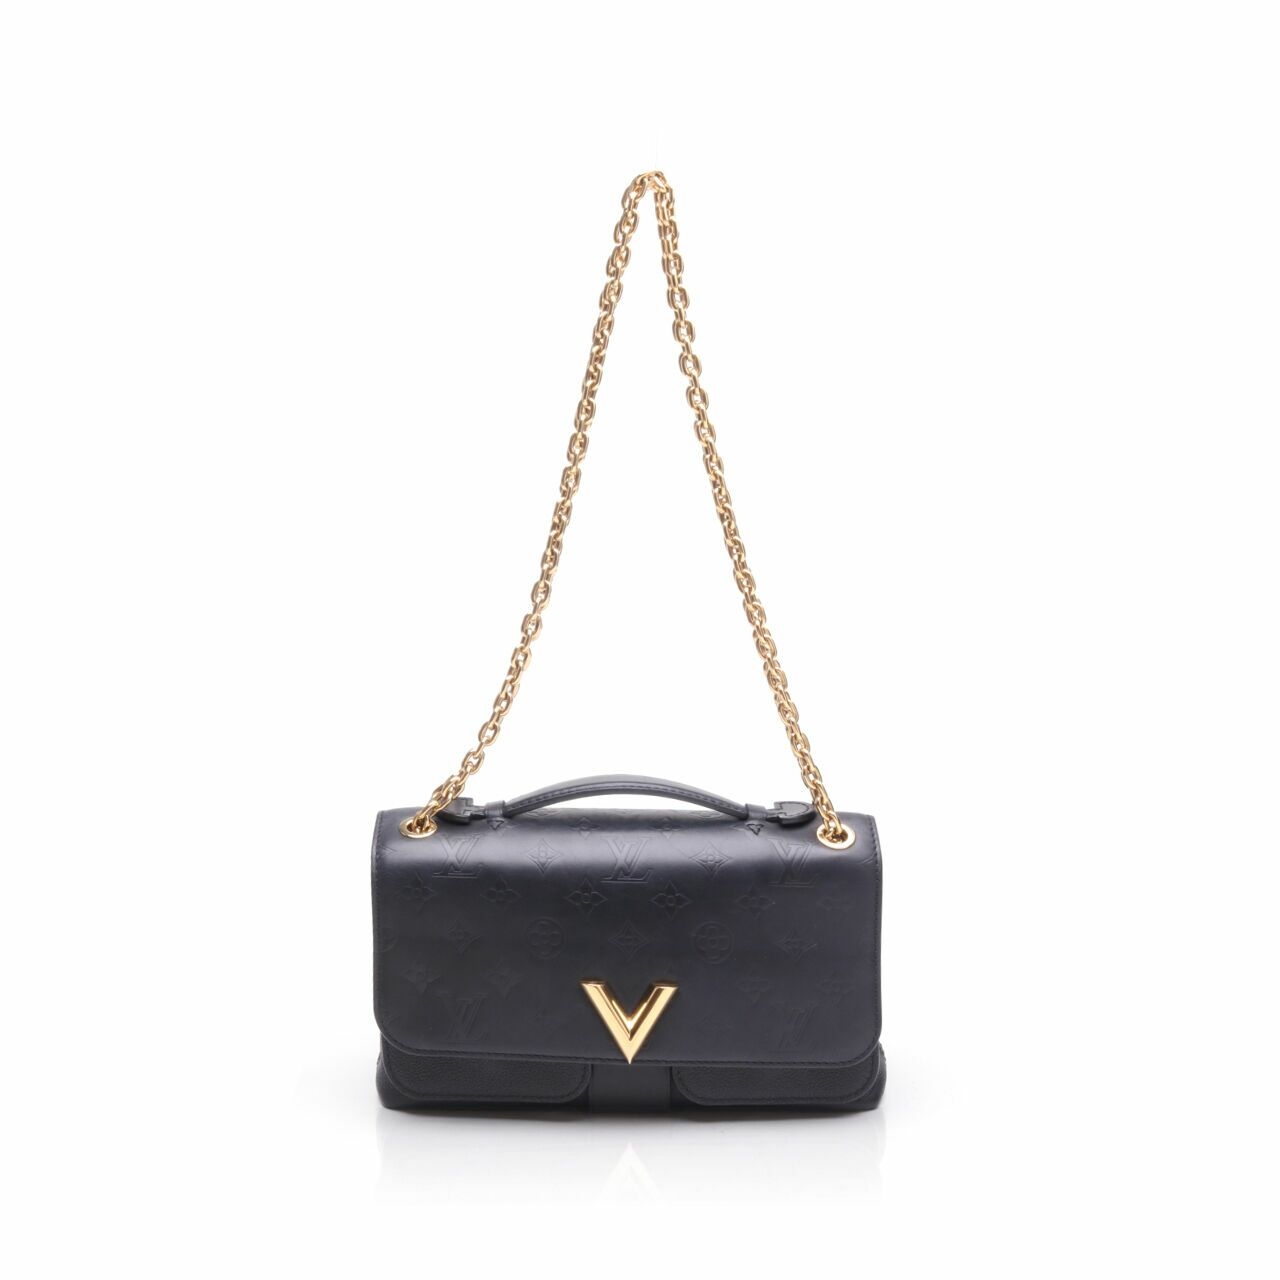 Louis Vuitton Very Chain Bag Noir Black 2017 Satchel